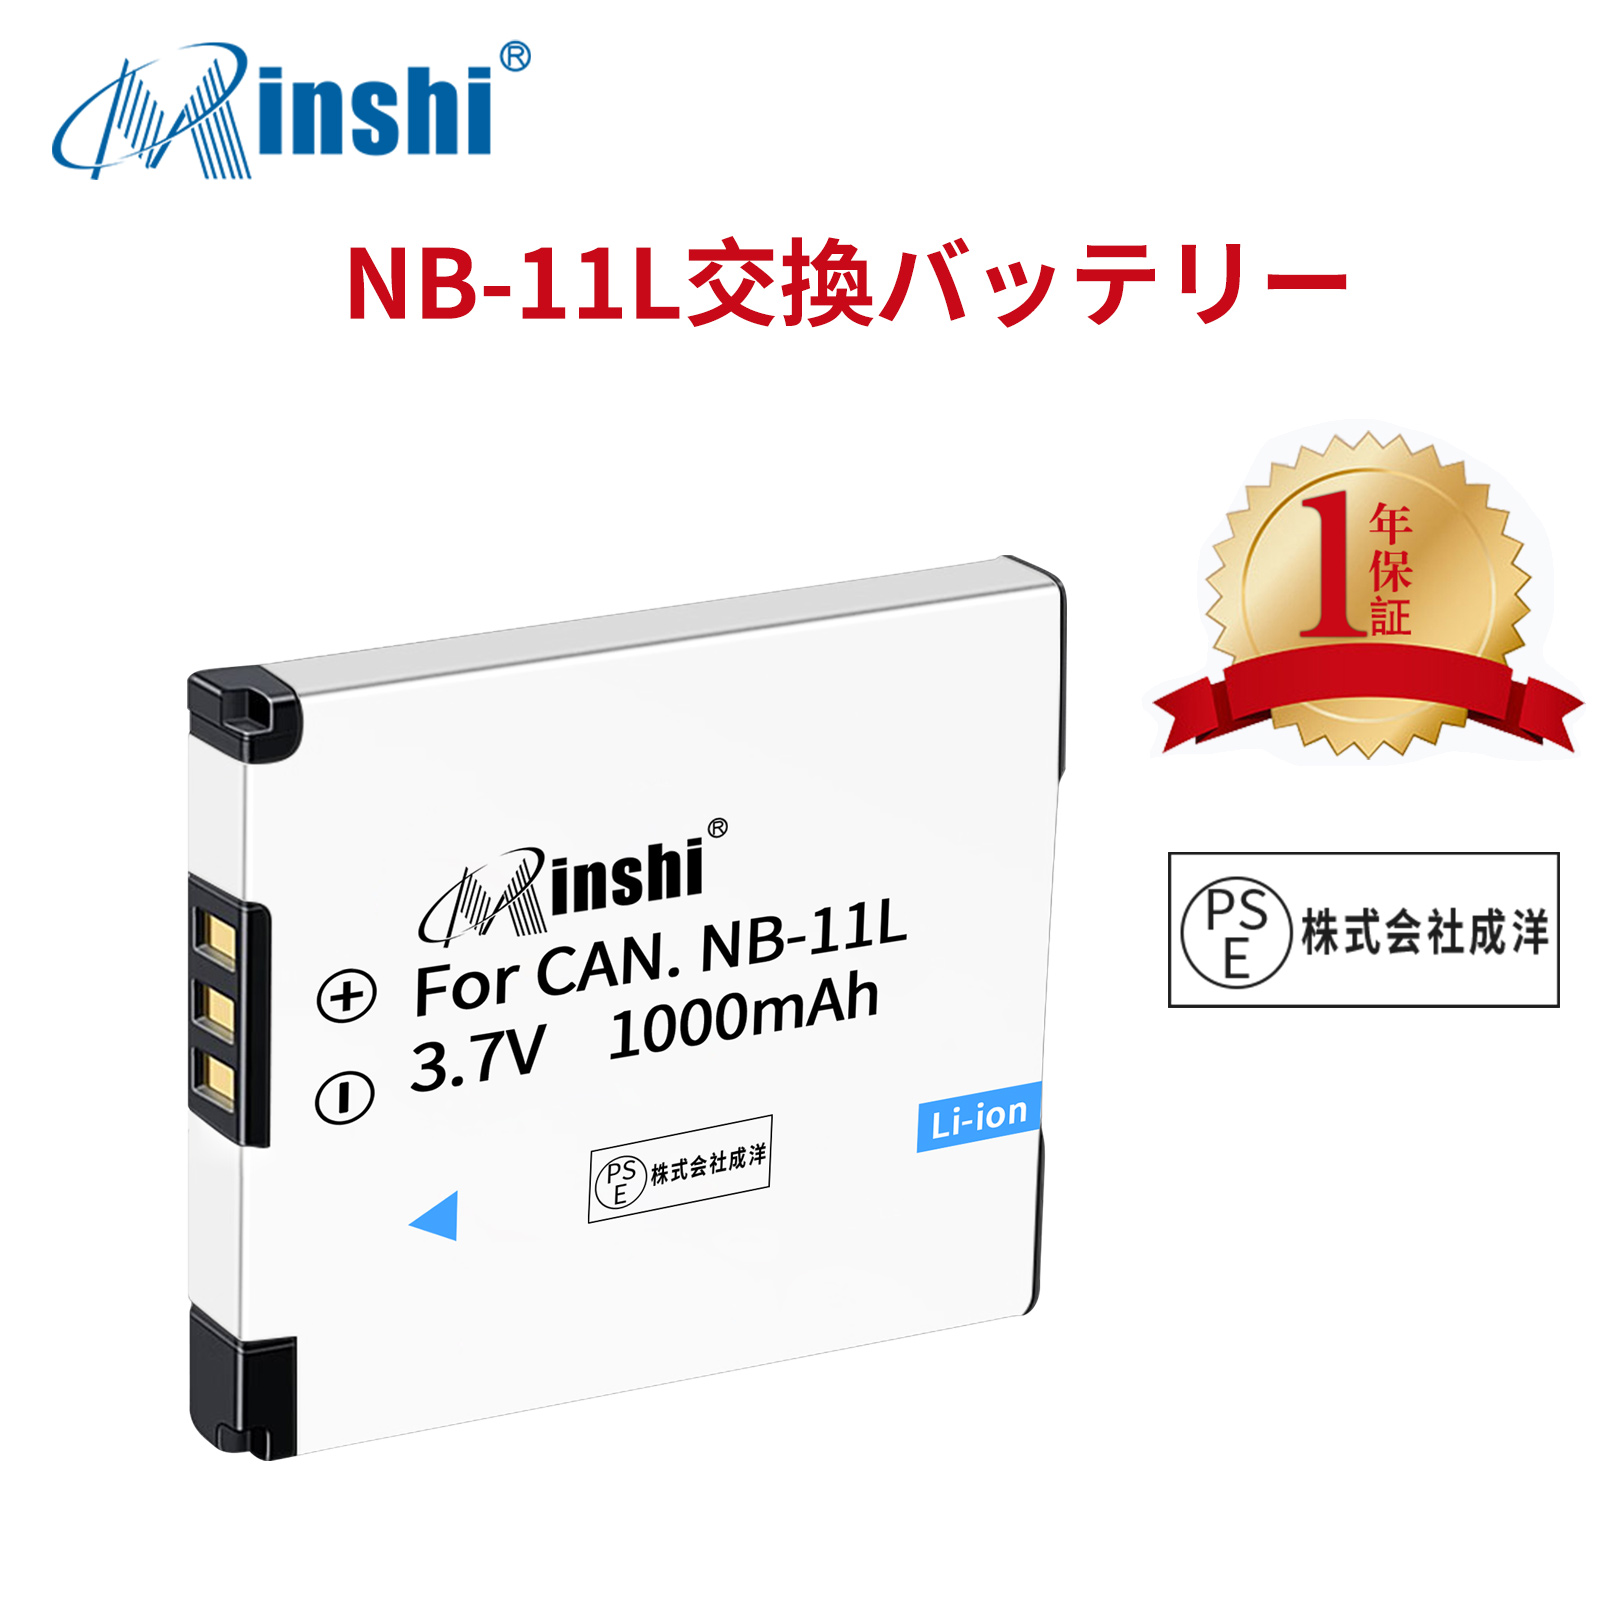 【1年保証】minshi Canon NB-11L 125 HS NB-11L NB-11LH 【1000mAh 3.7V】PSE認定済 高品質NB-11L交換用バッテリー